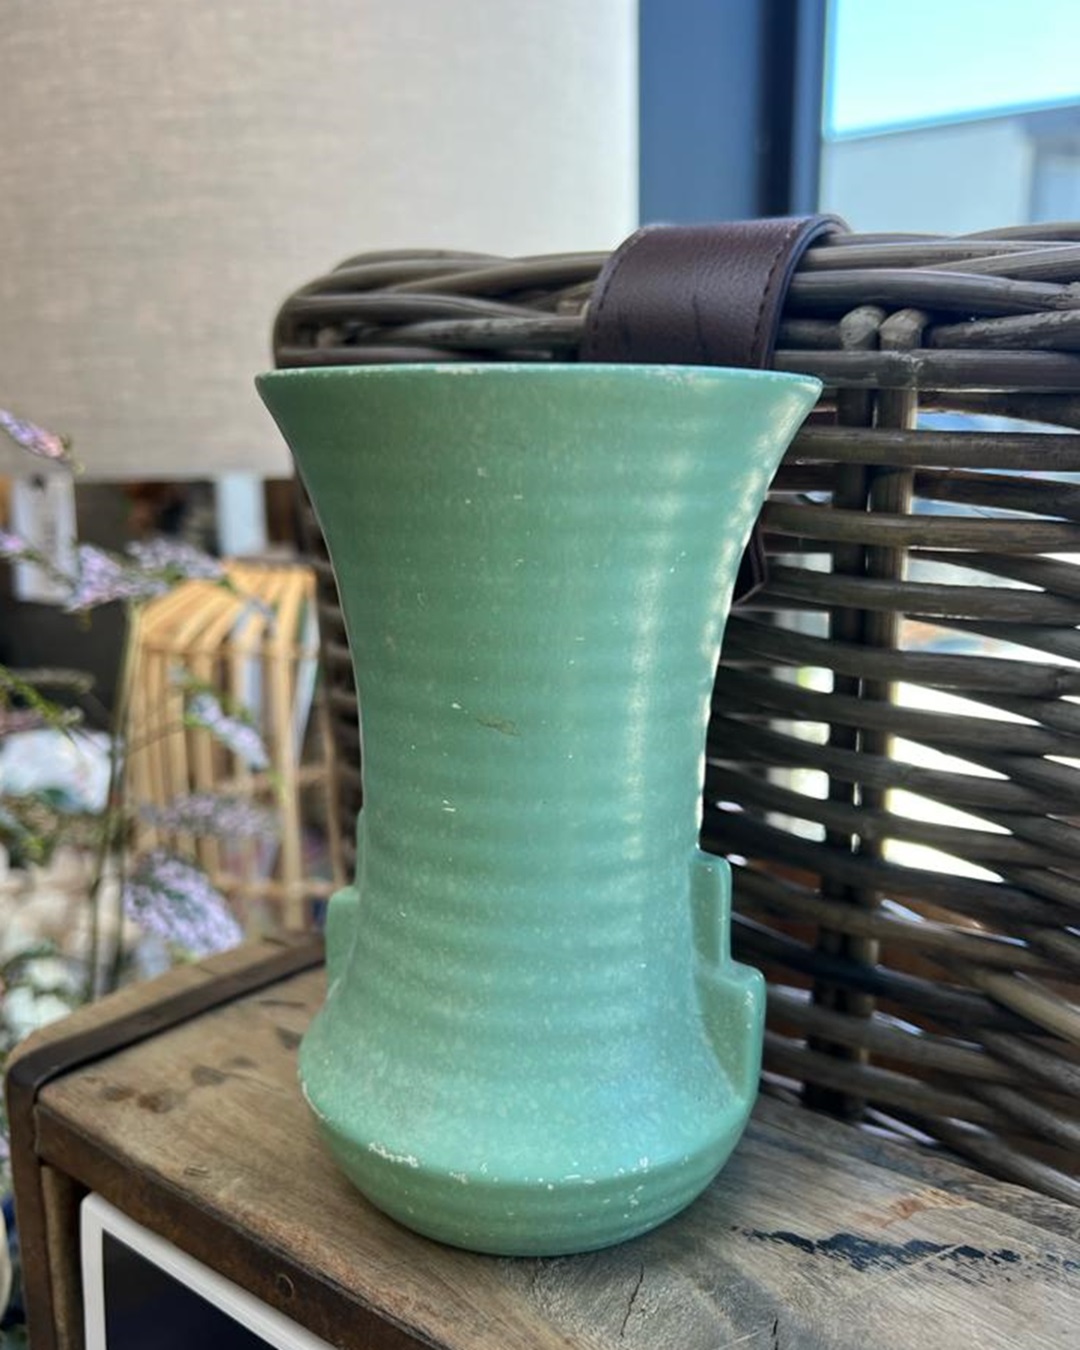 Art deco green vase on shelf